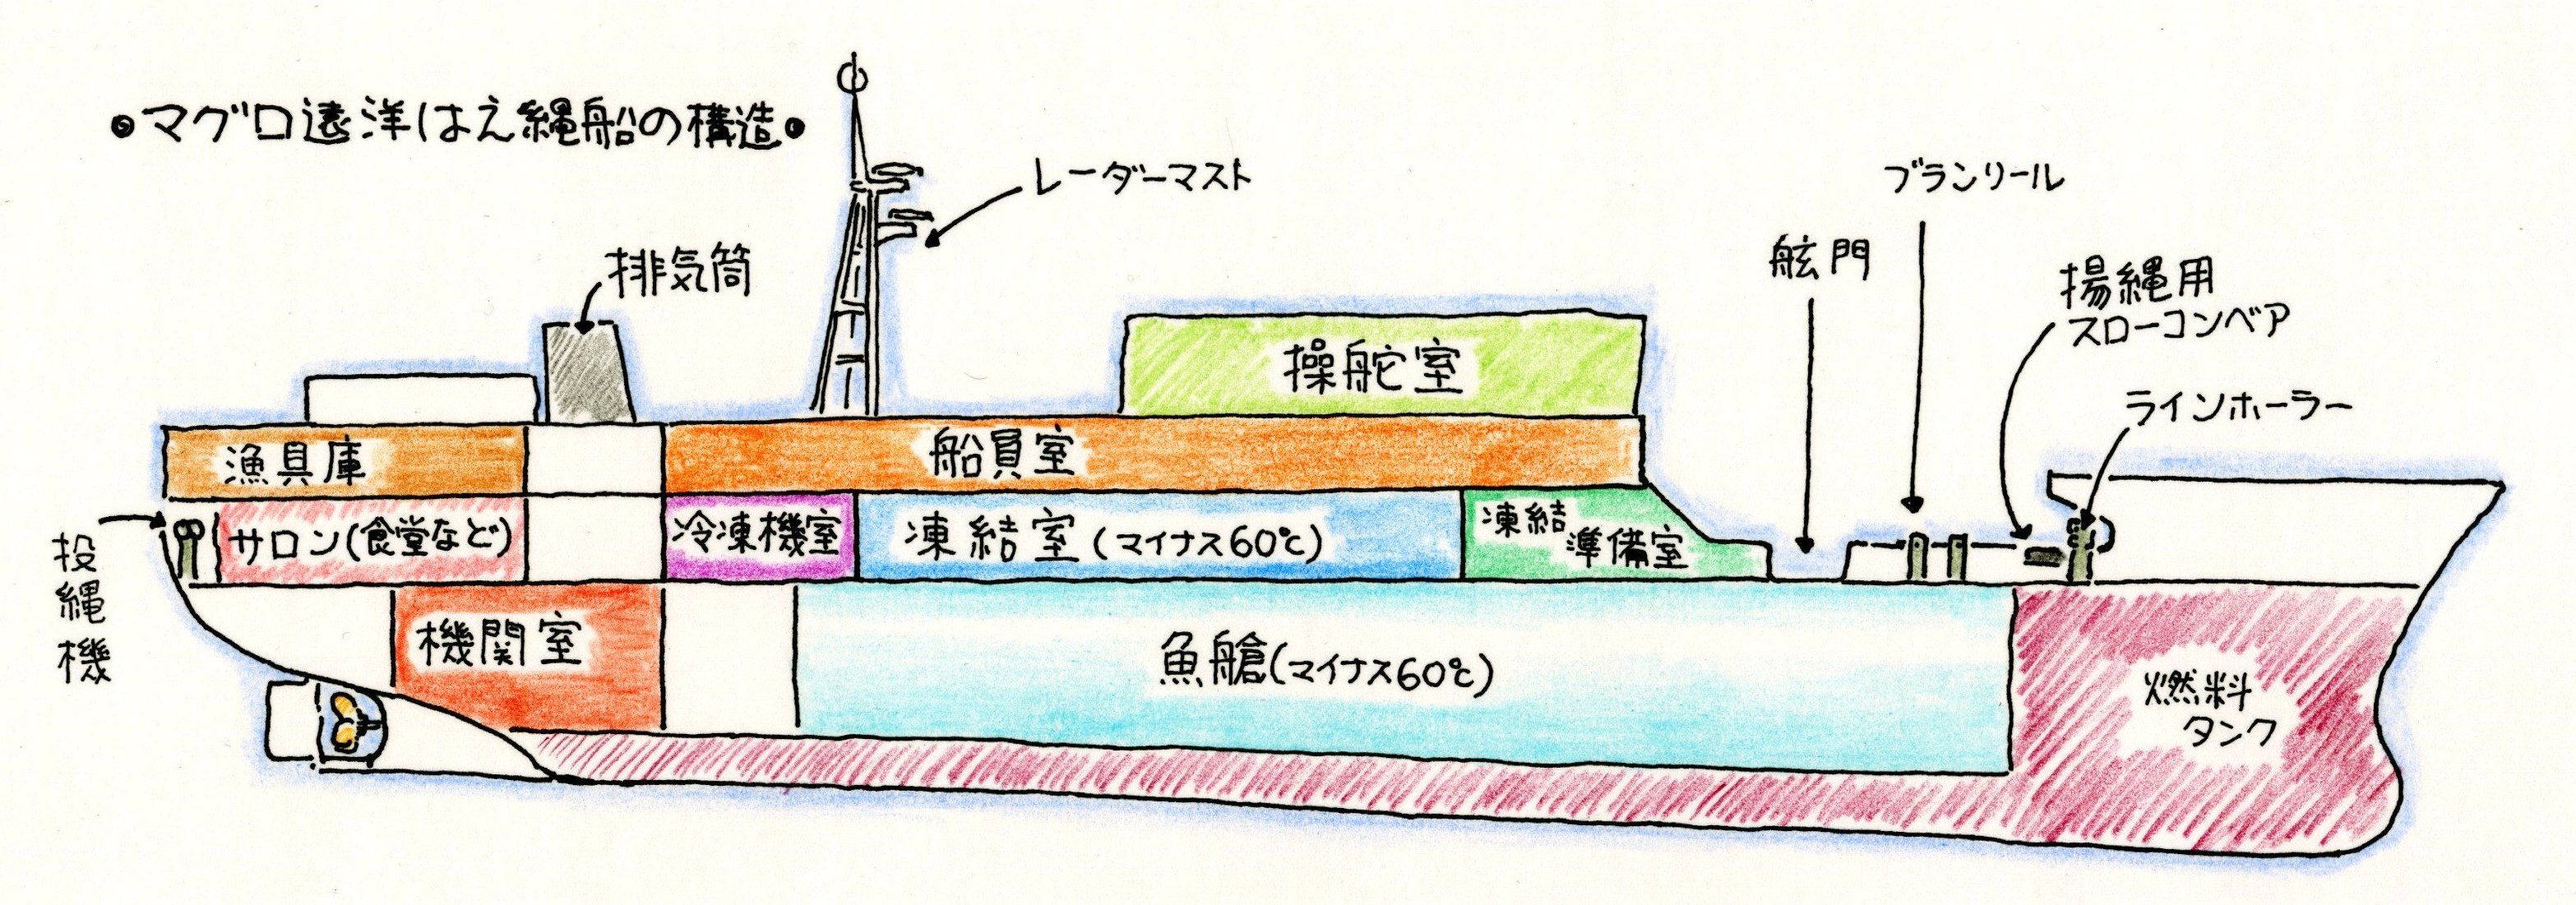 マグロ遠洋延縄船の構造のイラスト